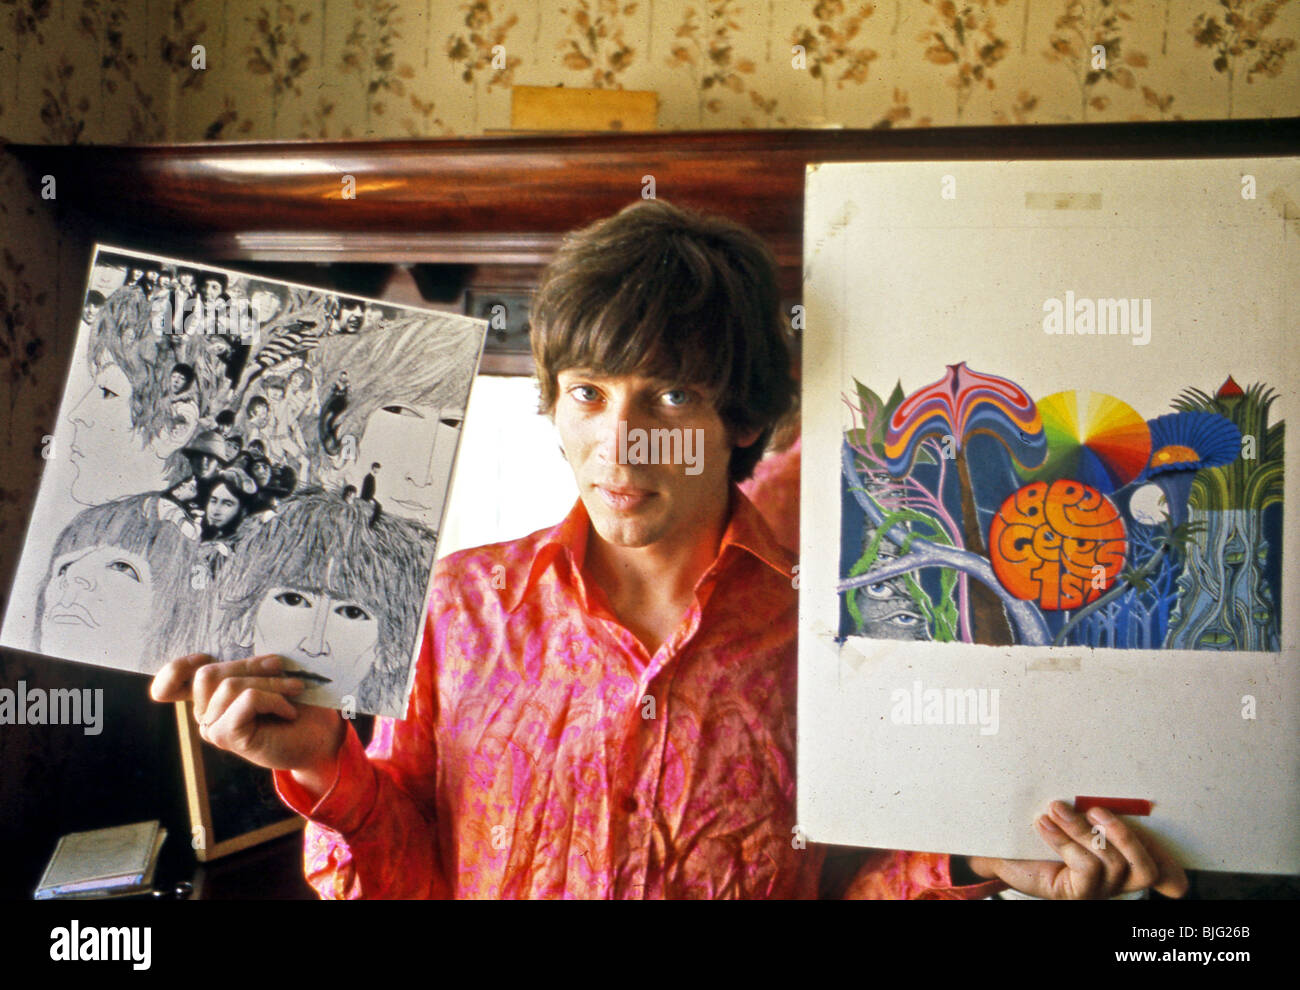 KLAUS VOORMAN al suo Streatham, London, casa il 27 luglio 1967 con la sua illustrazione originale per i Beatles e Bee Gees. Foto: Tony Gale Foto Stock